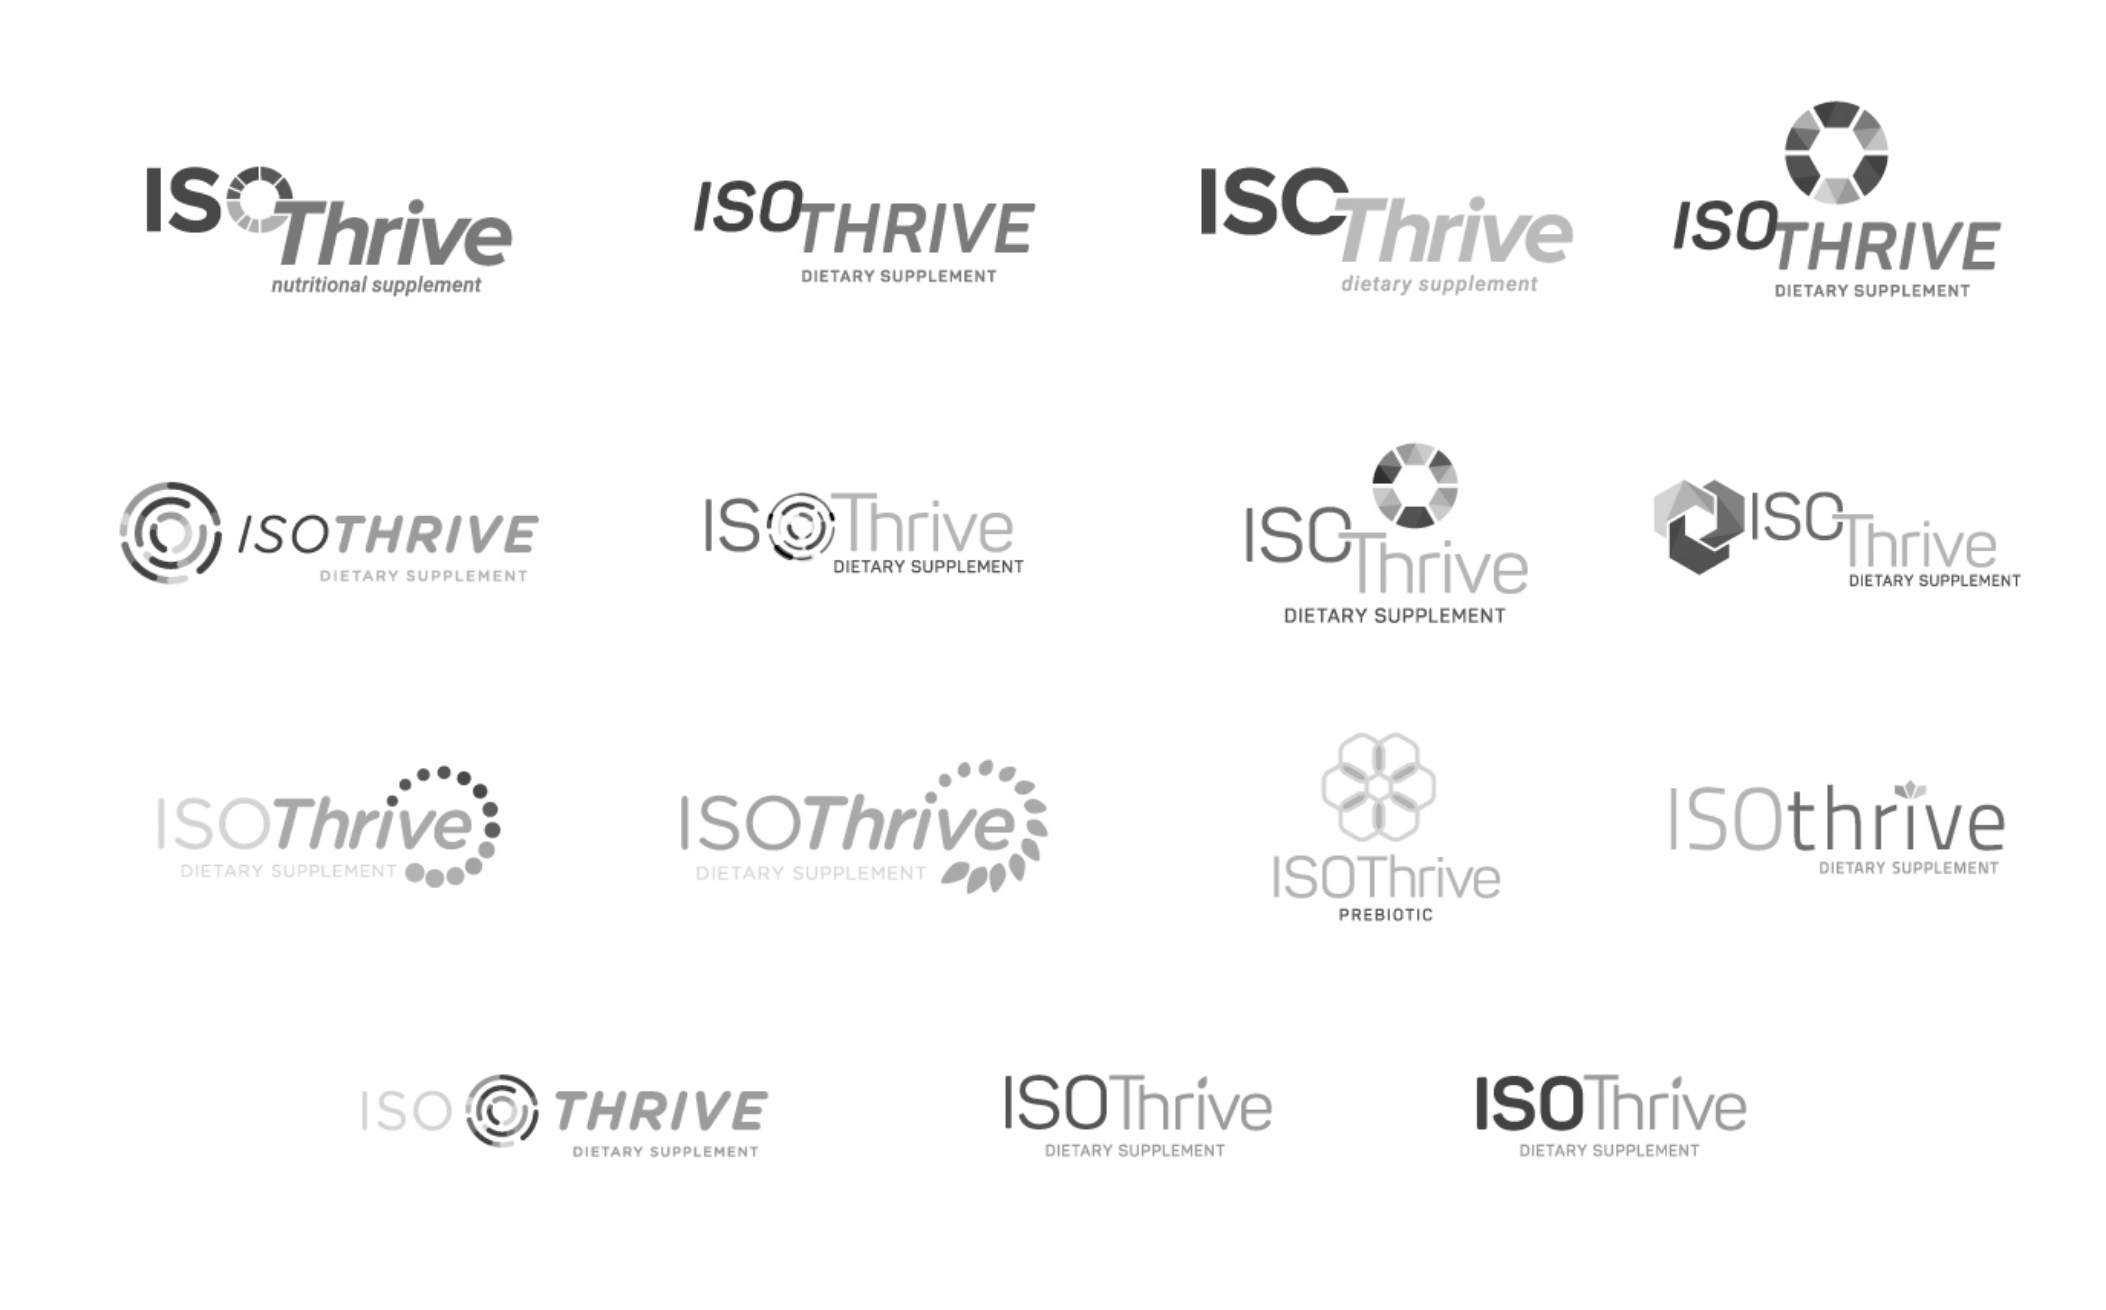 IsoThrive logo options